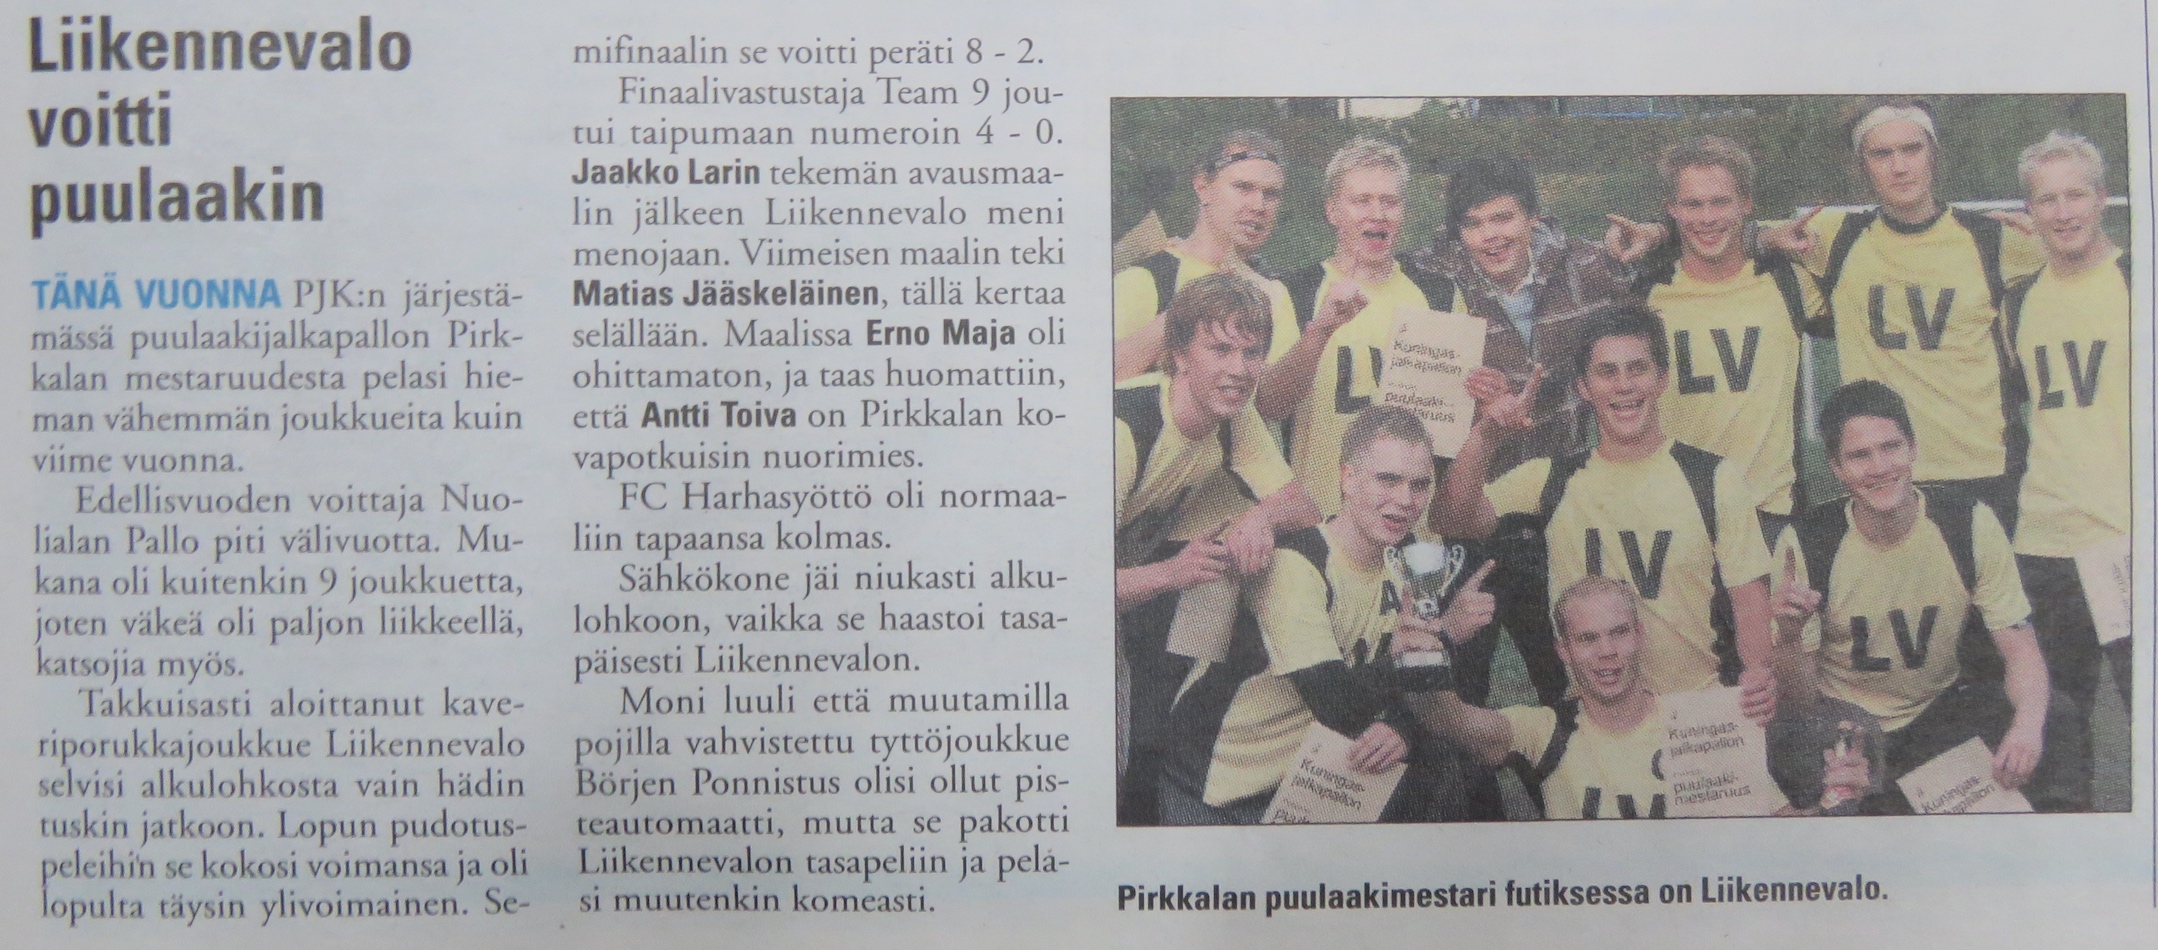 Turnausraportti Pirkkalaisessa 29.09. 2010